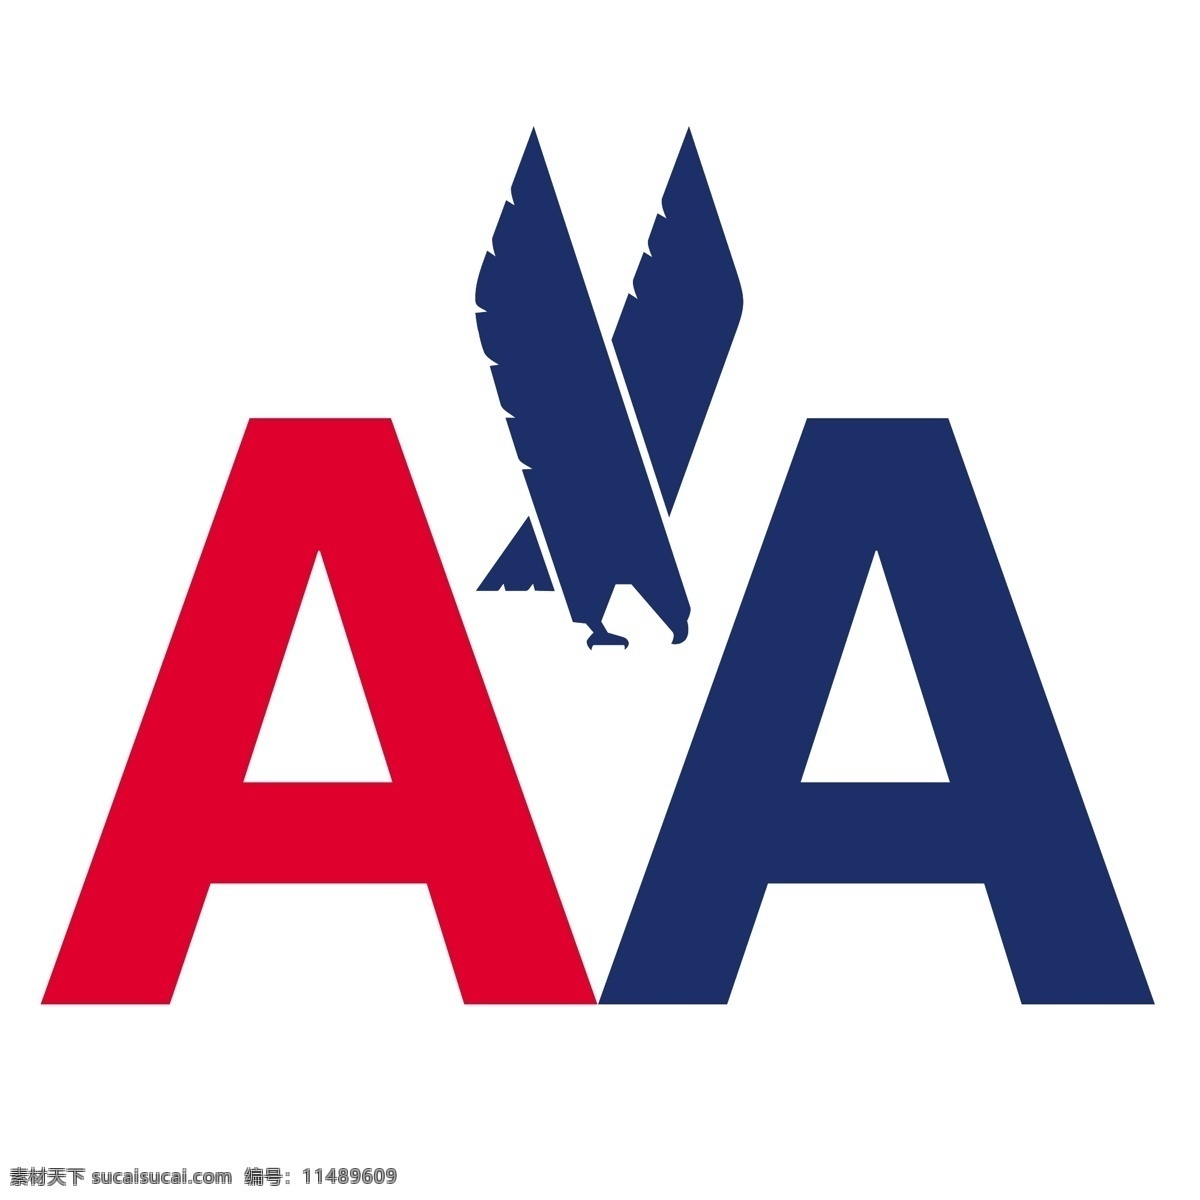 航空公司 美国 美国航空公司 航空 矢量 自由 标志 logo 矢量图 建筑家居